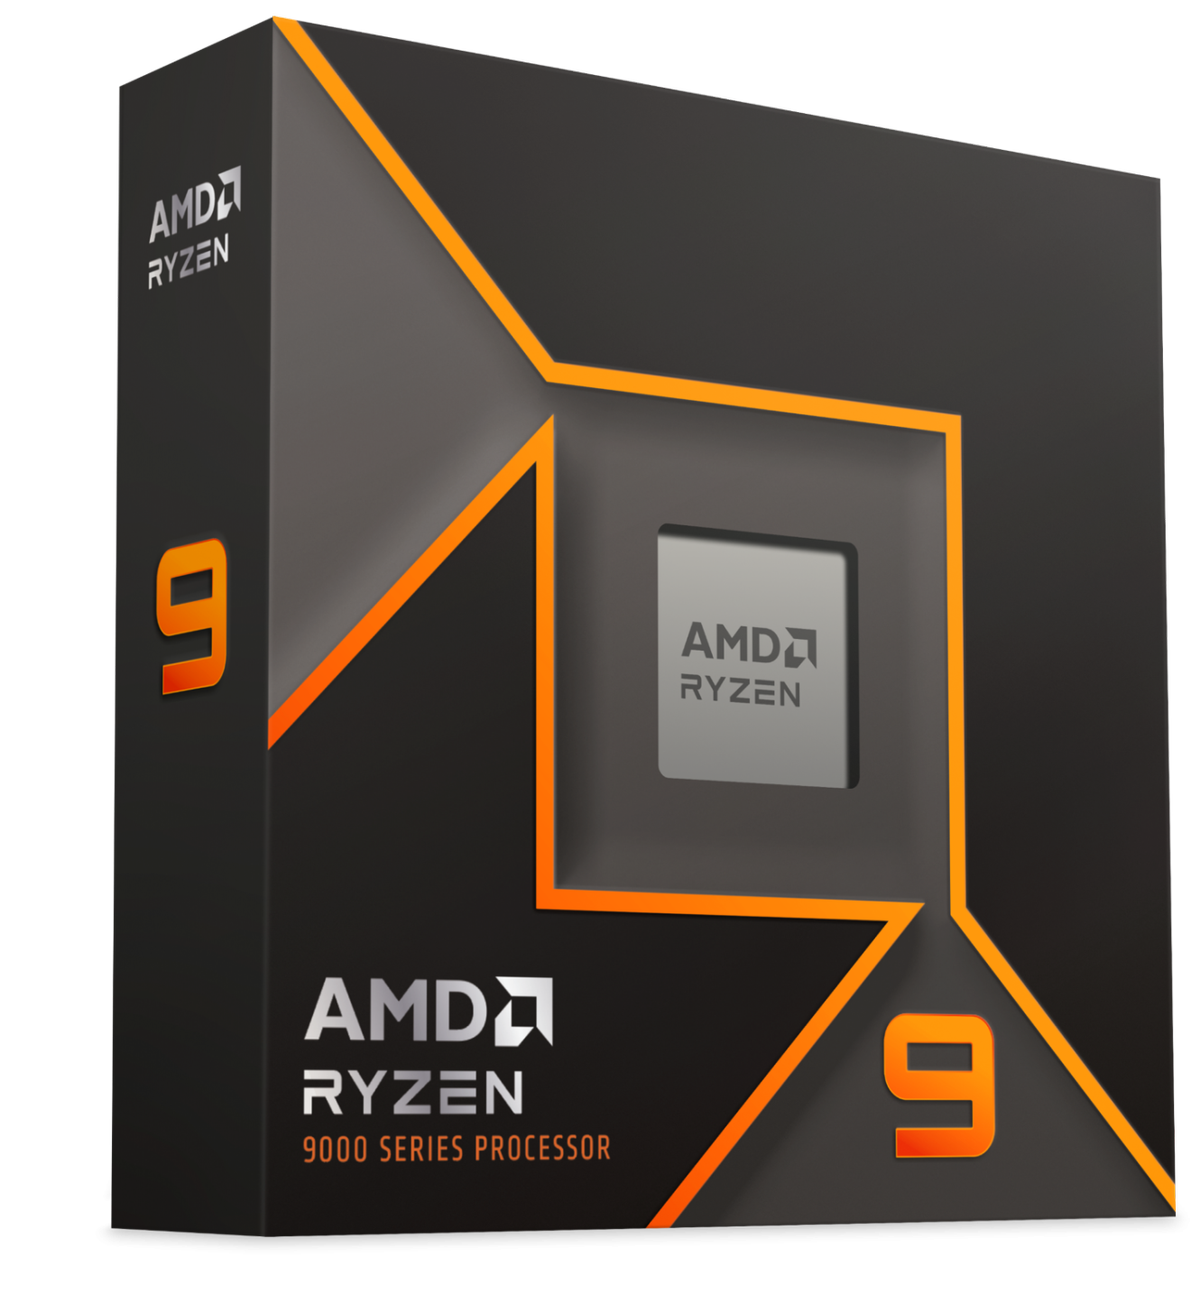 AMD Ryzen 9000 могут быть дешевле своих предшественников